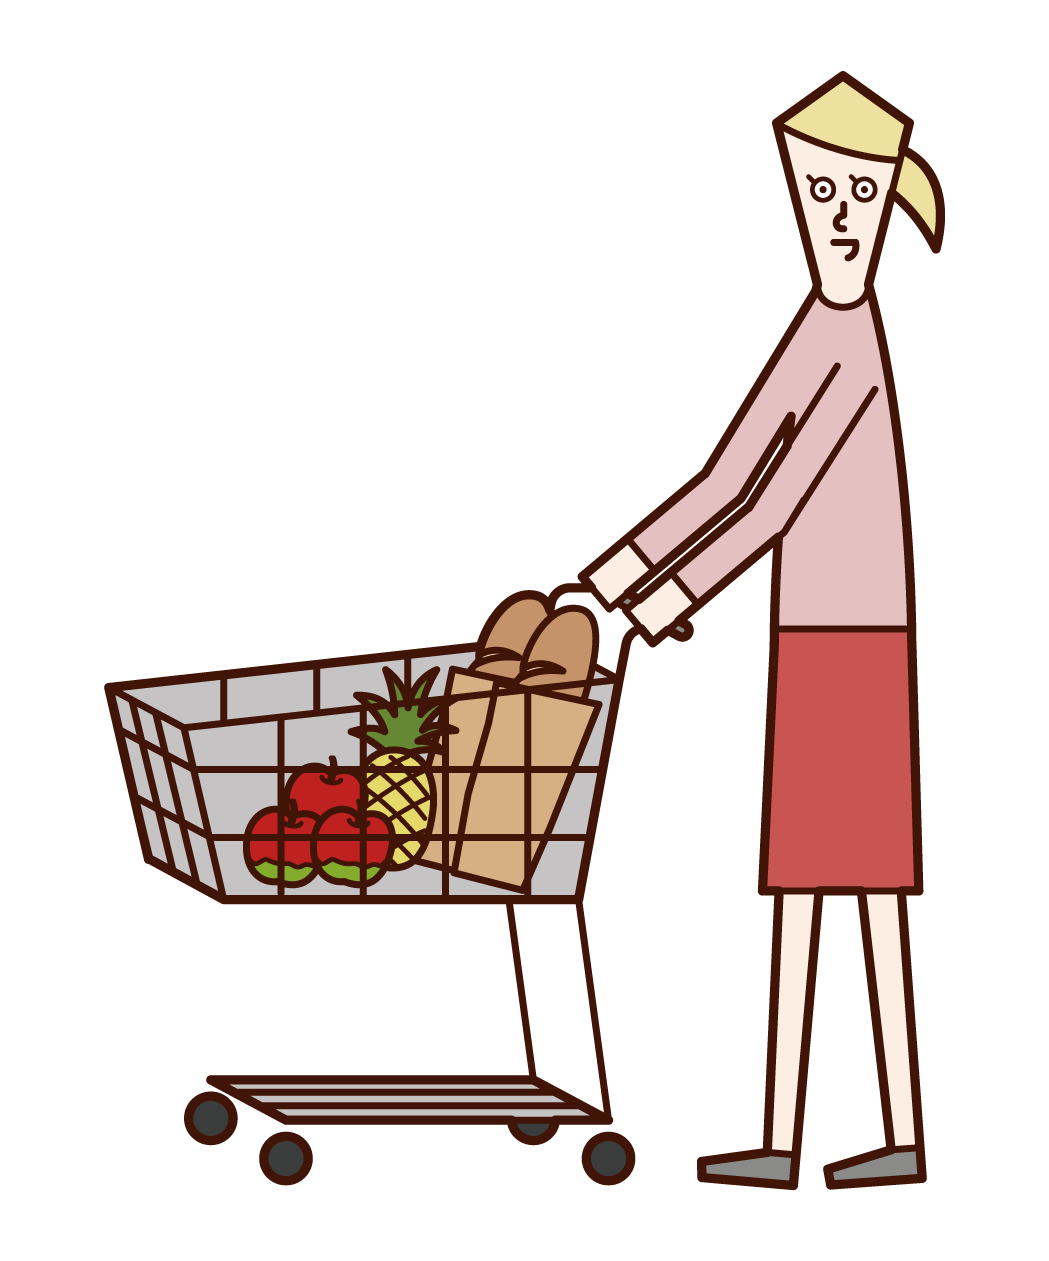 슈퍼마켓에서 쇼핑하는 사람 (여성)의 그림